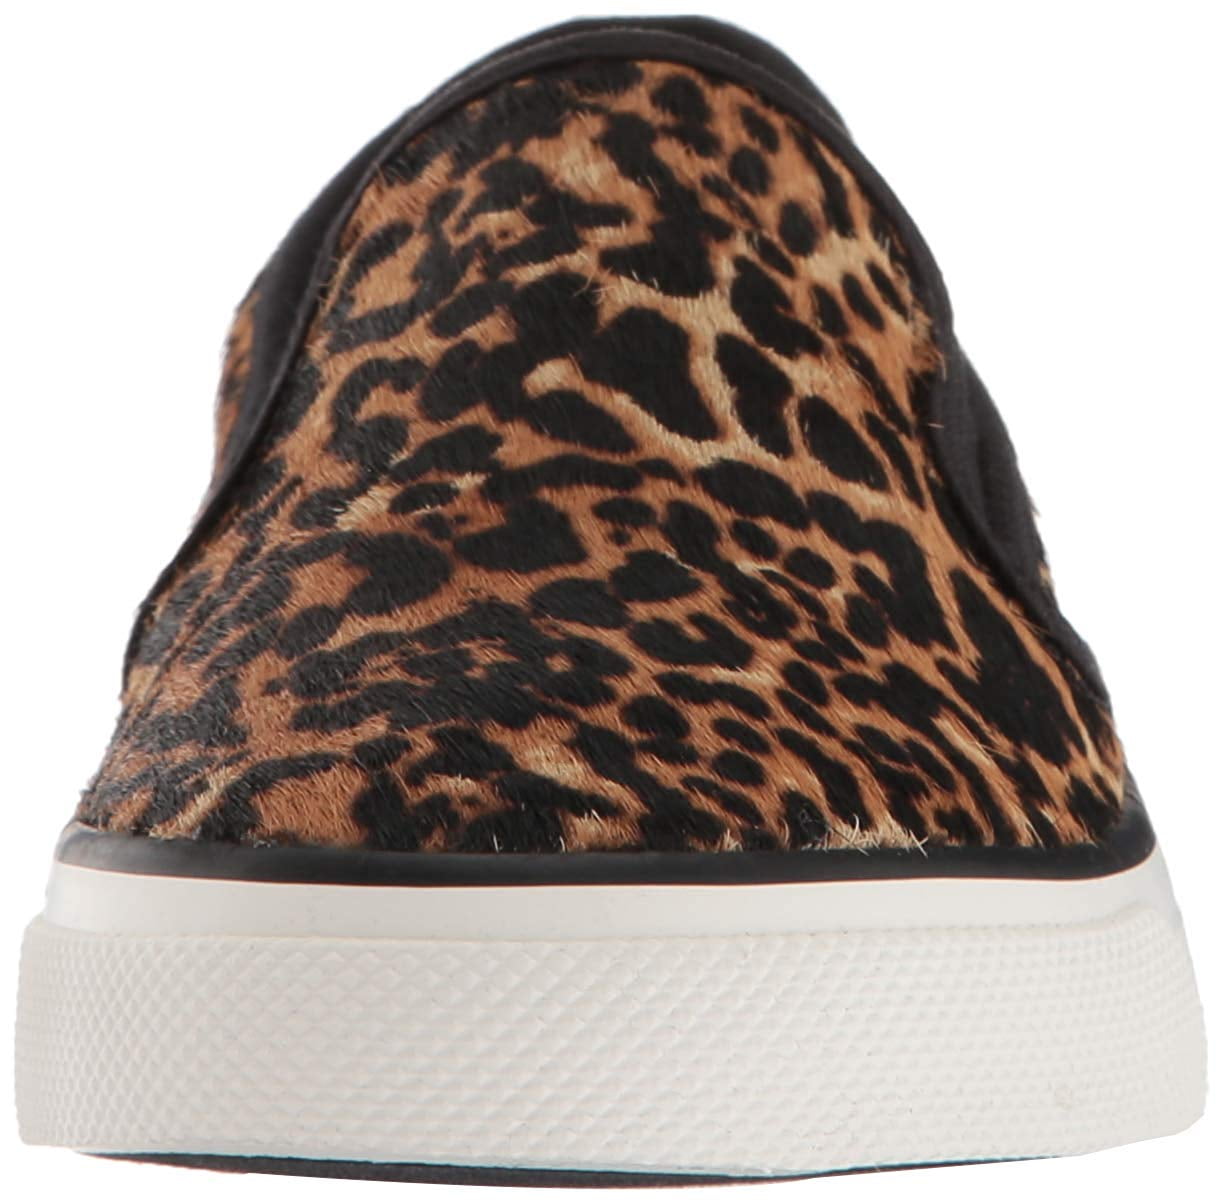 sperry leopard slip on sneakers